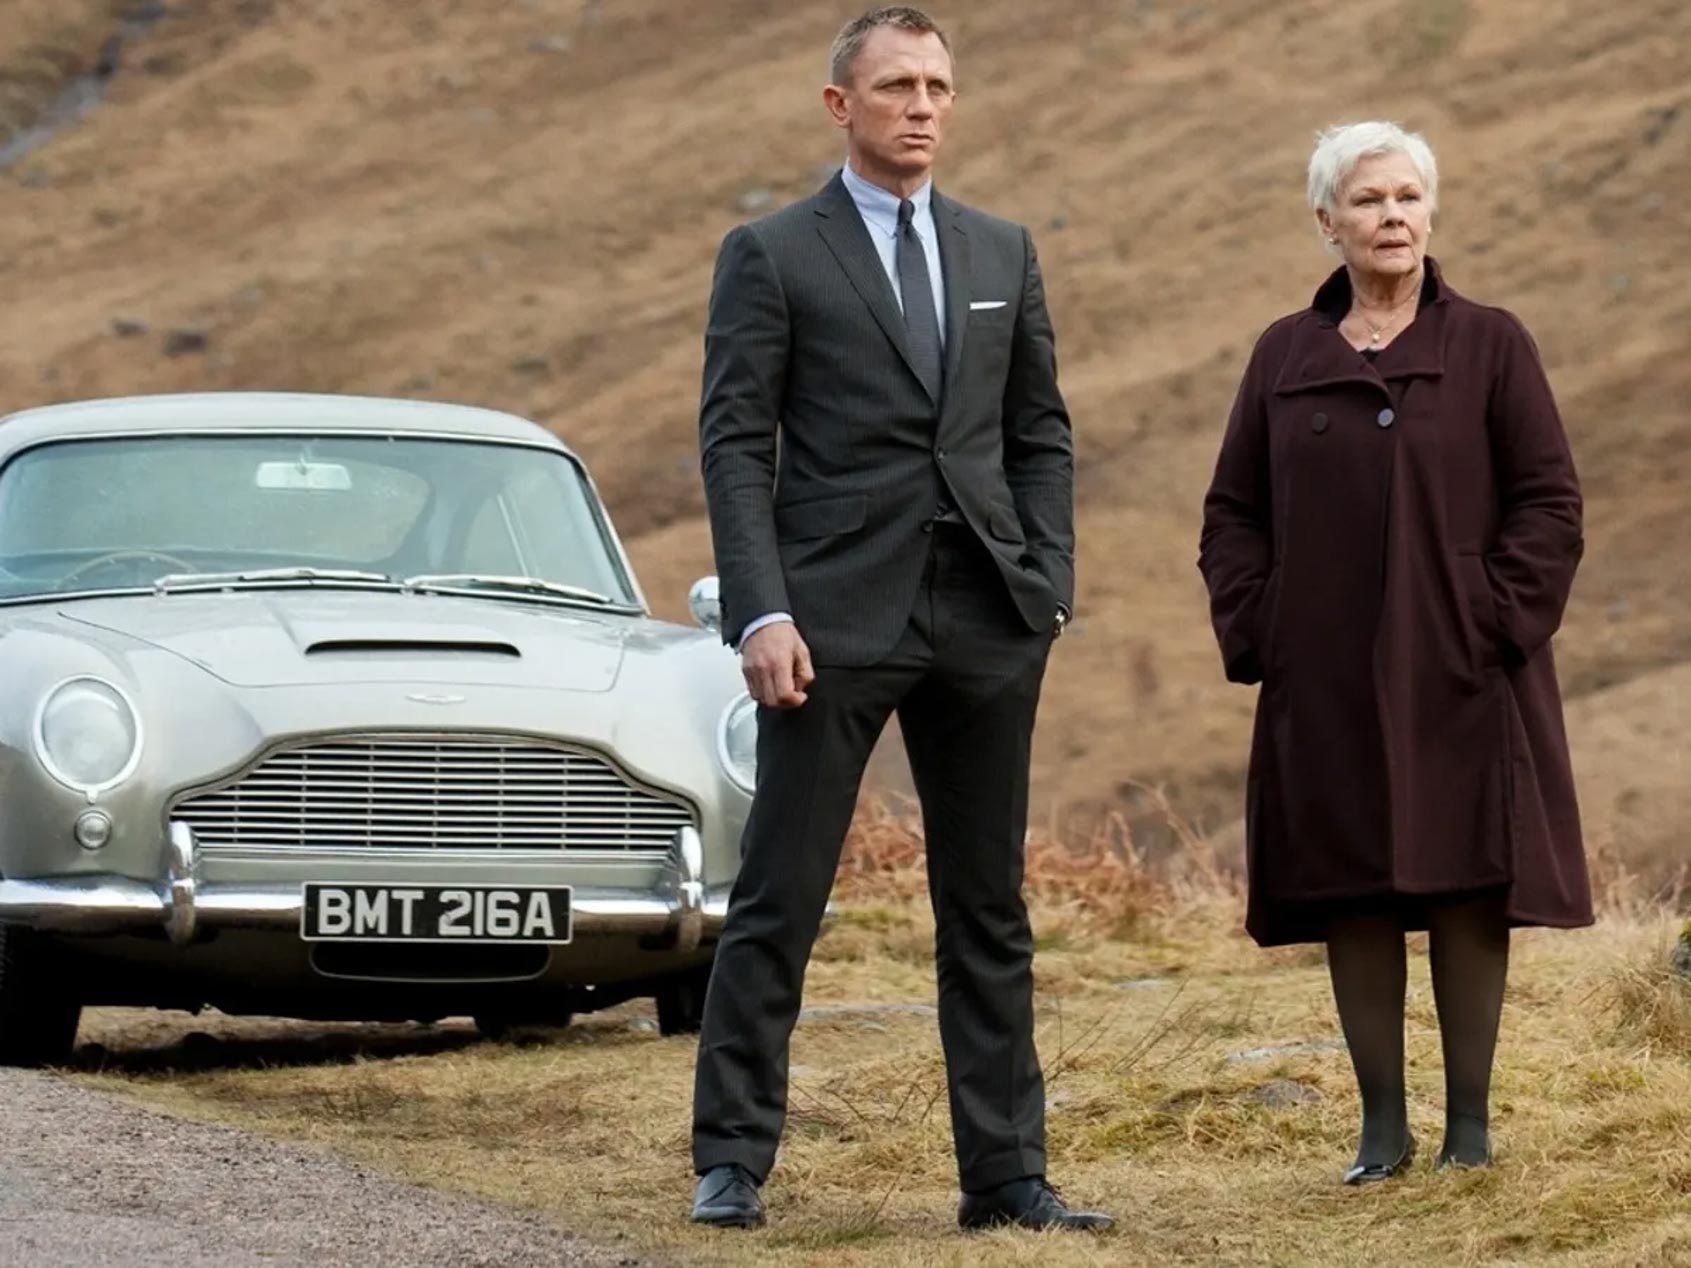 A licence to charge? Công nghệ mới nào sẽ được trình diễn trong tập phim mới về James Bond?